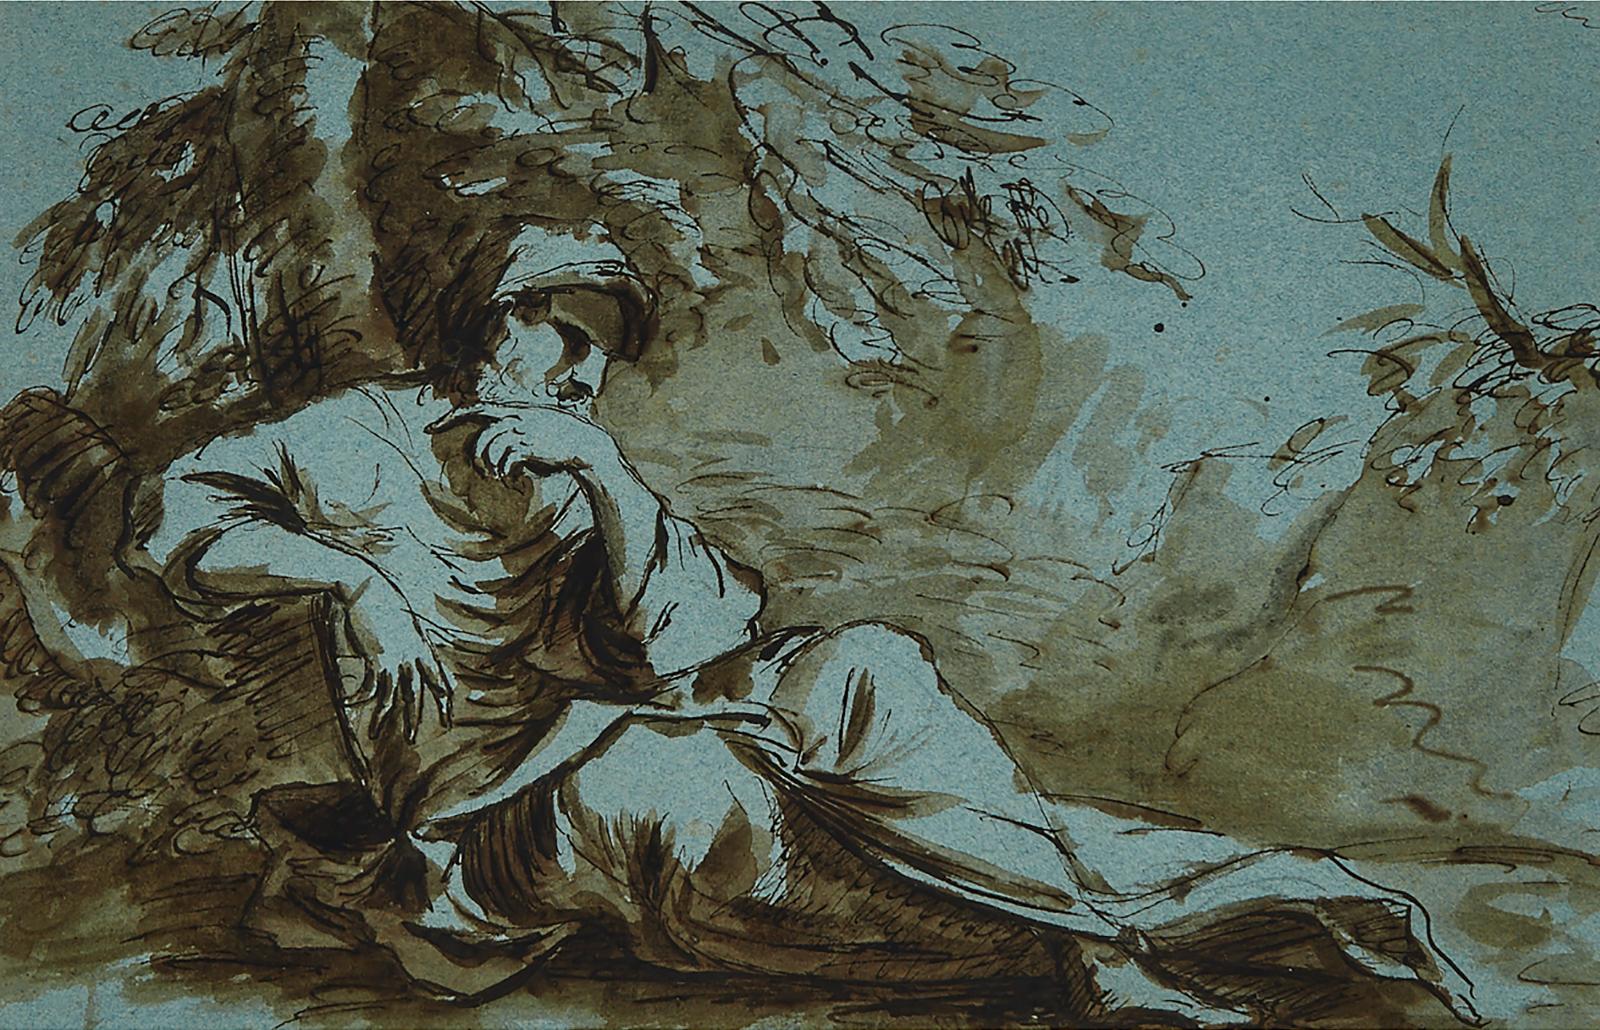 Francesco Bartolozzi (1727-1815) - A Reclining River God